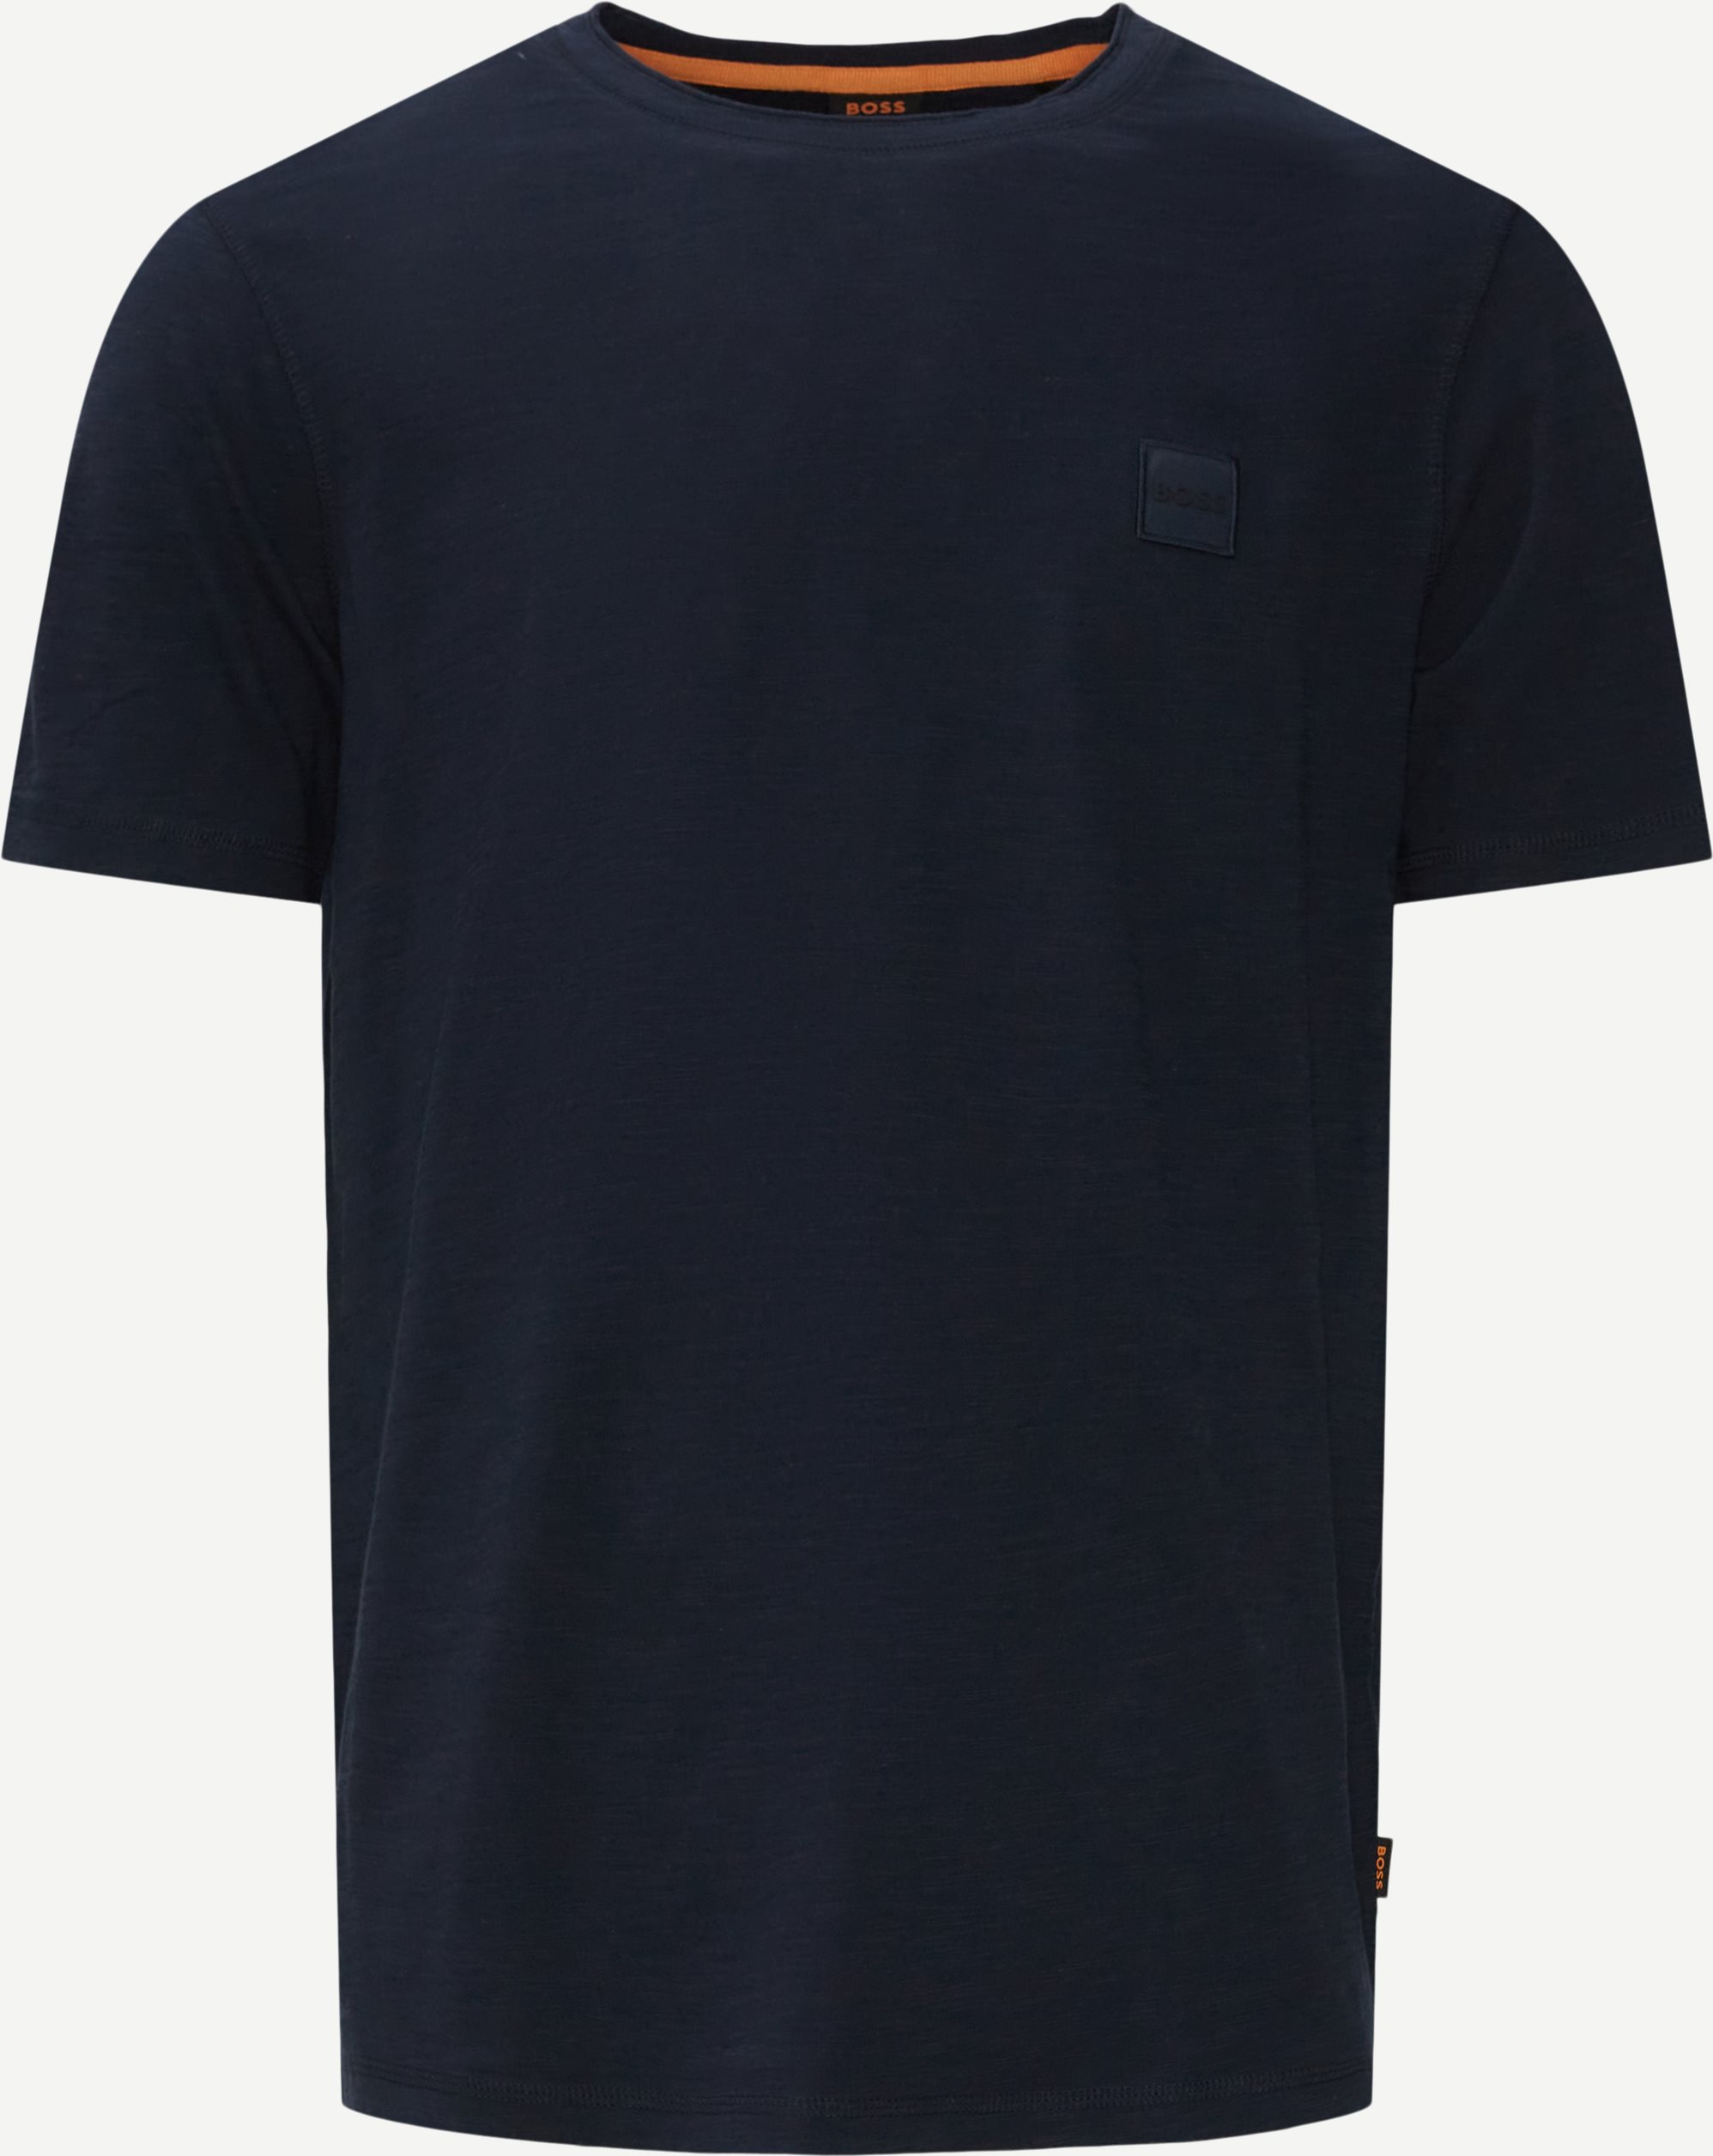 Tegood T-shirt - T-shirts - Regular fit - Blå